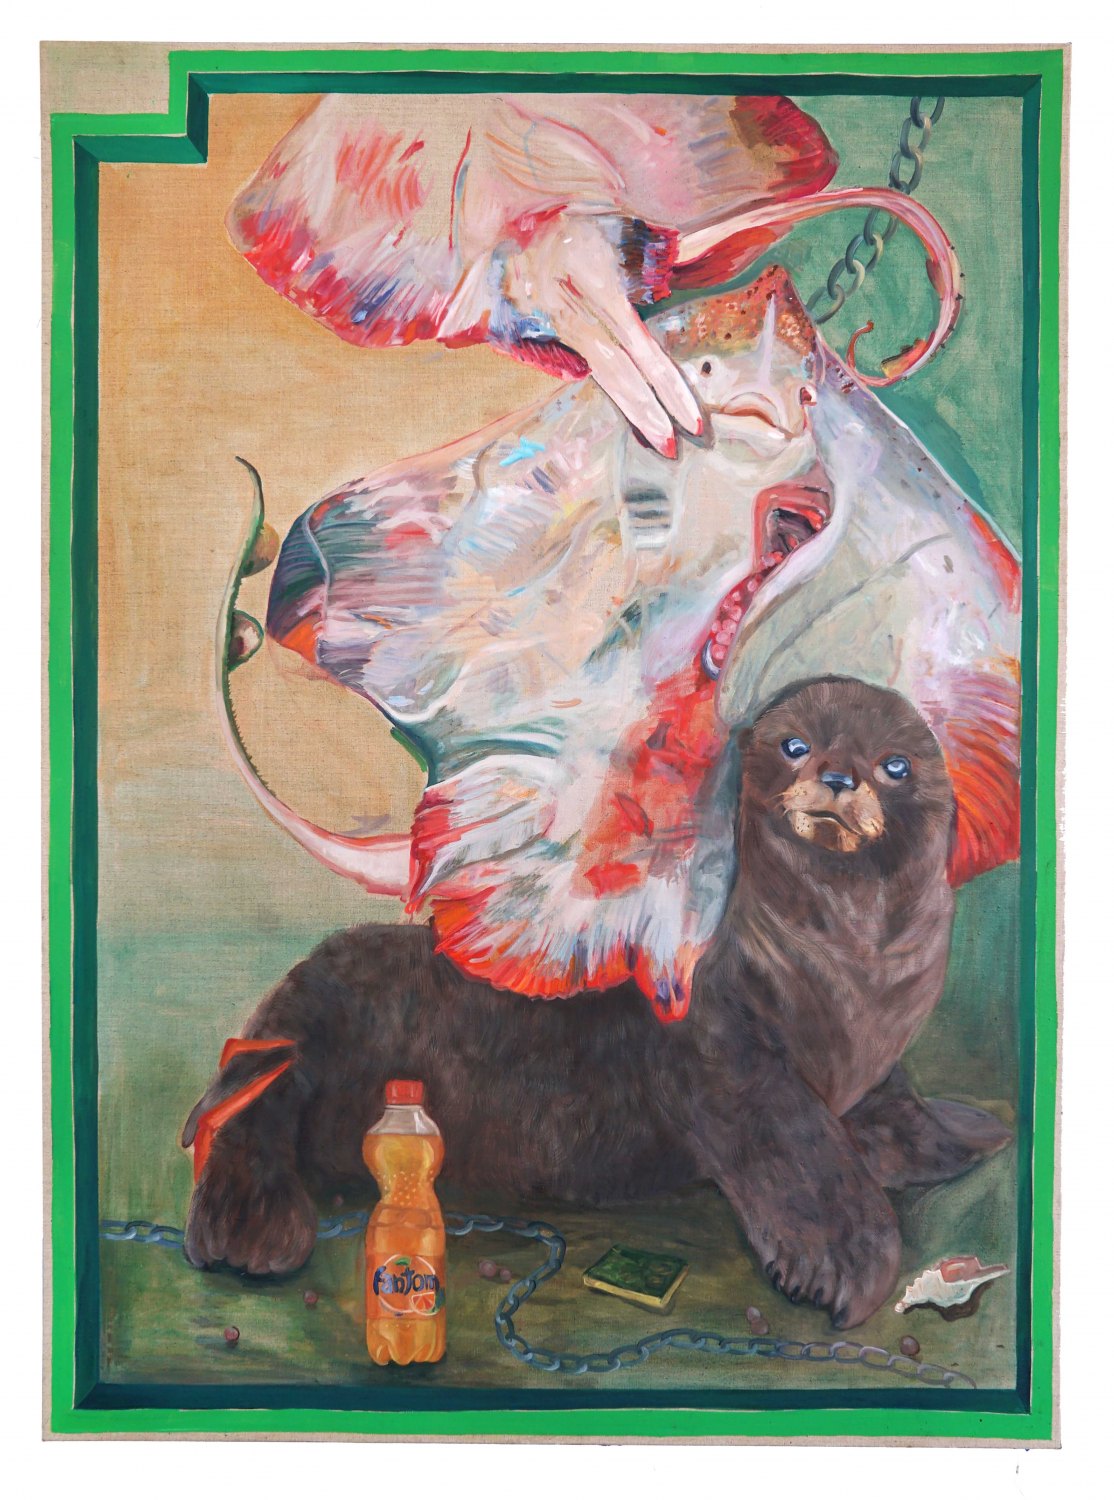 Jill Mulleady Fantom, 2018 Oil on linen, 167 x 122 cm